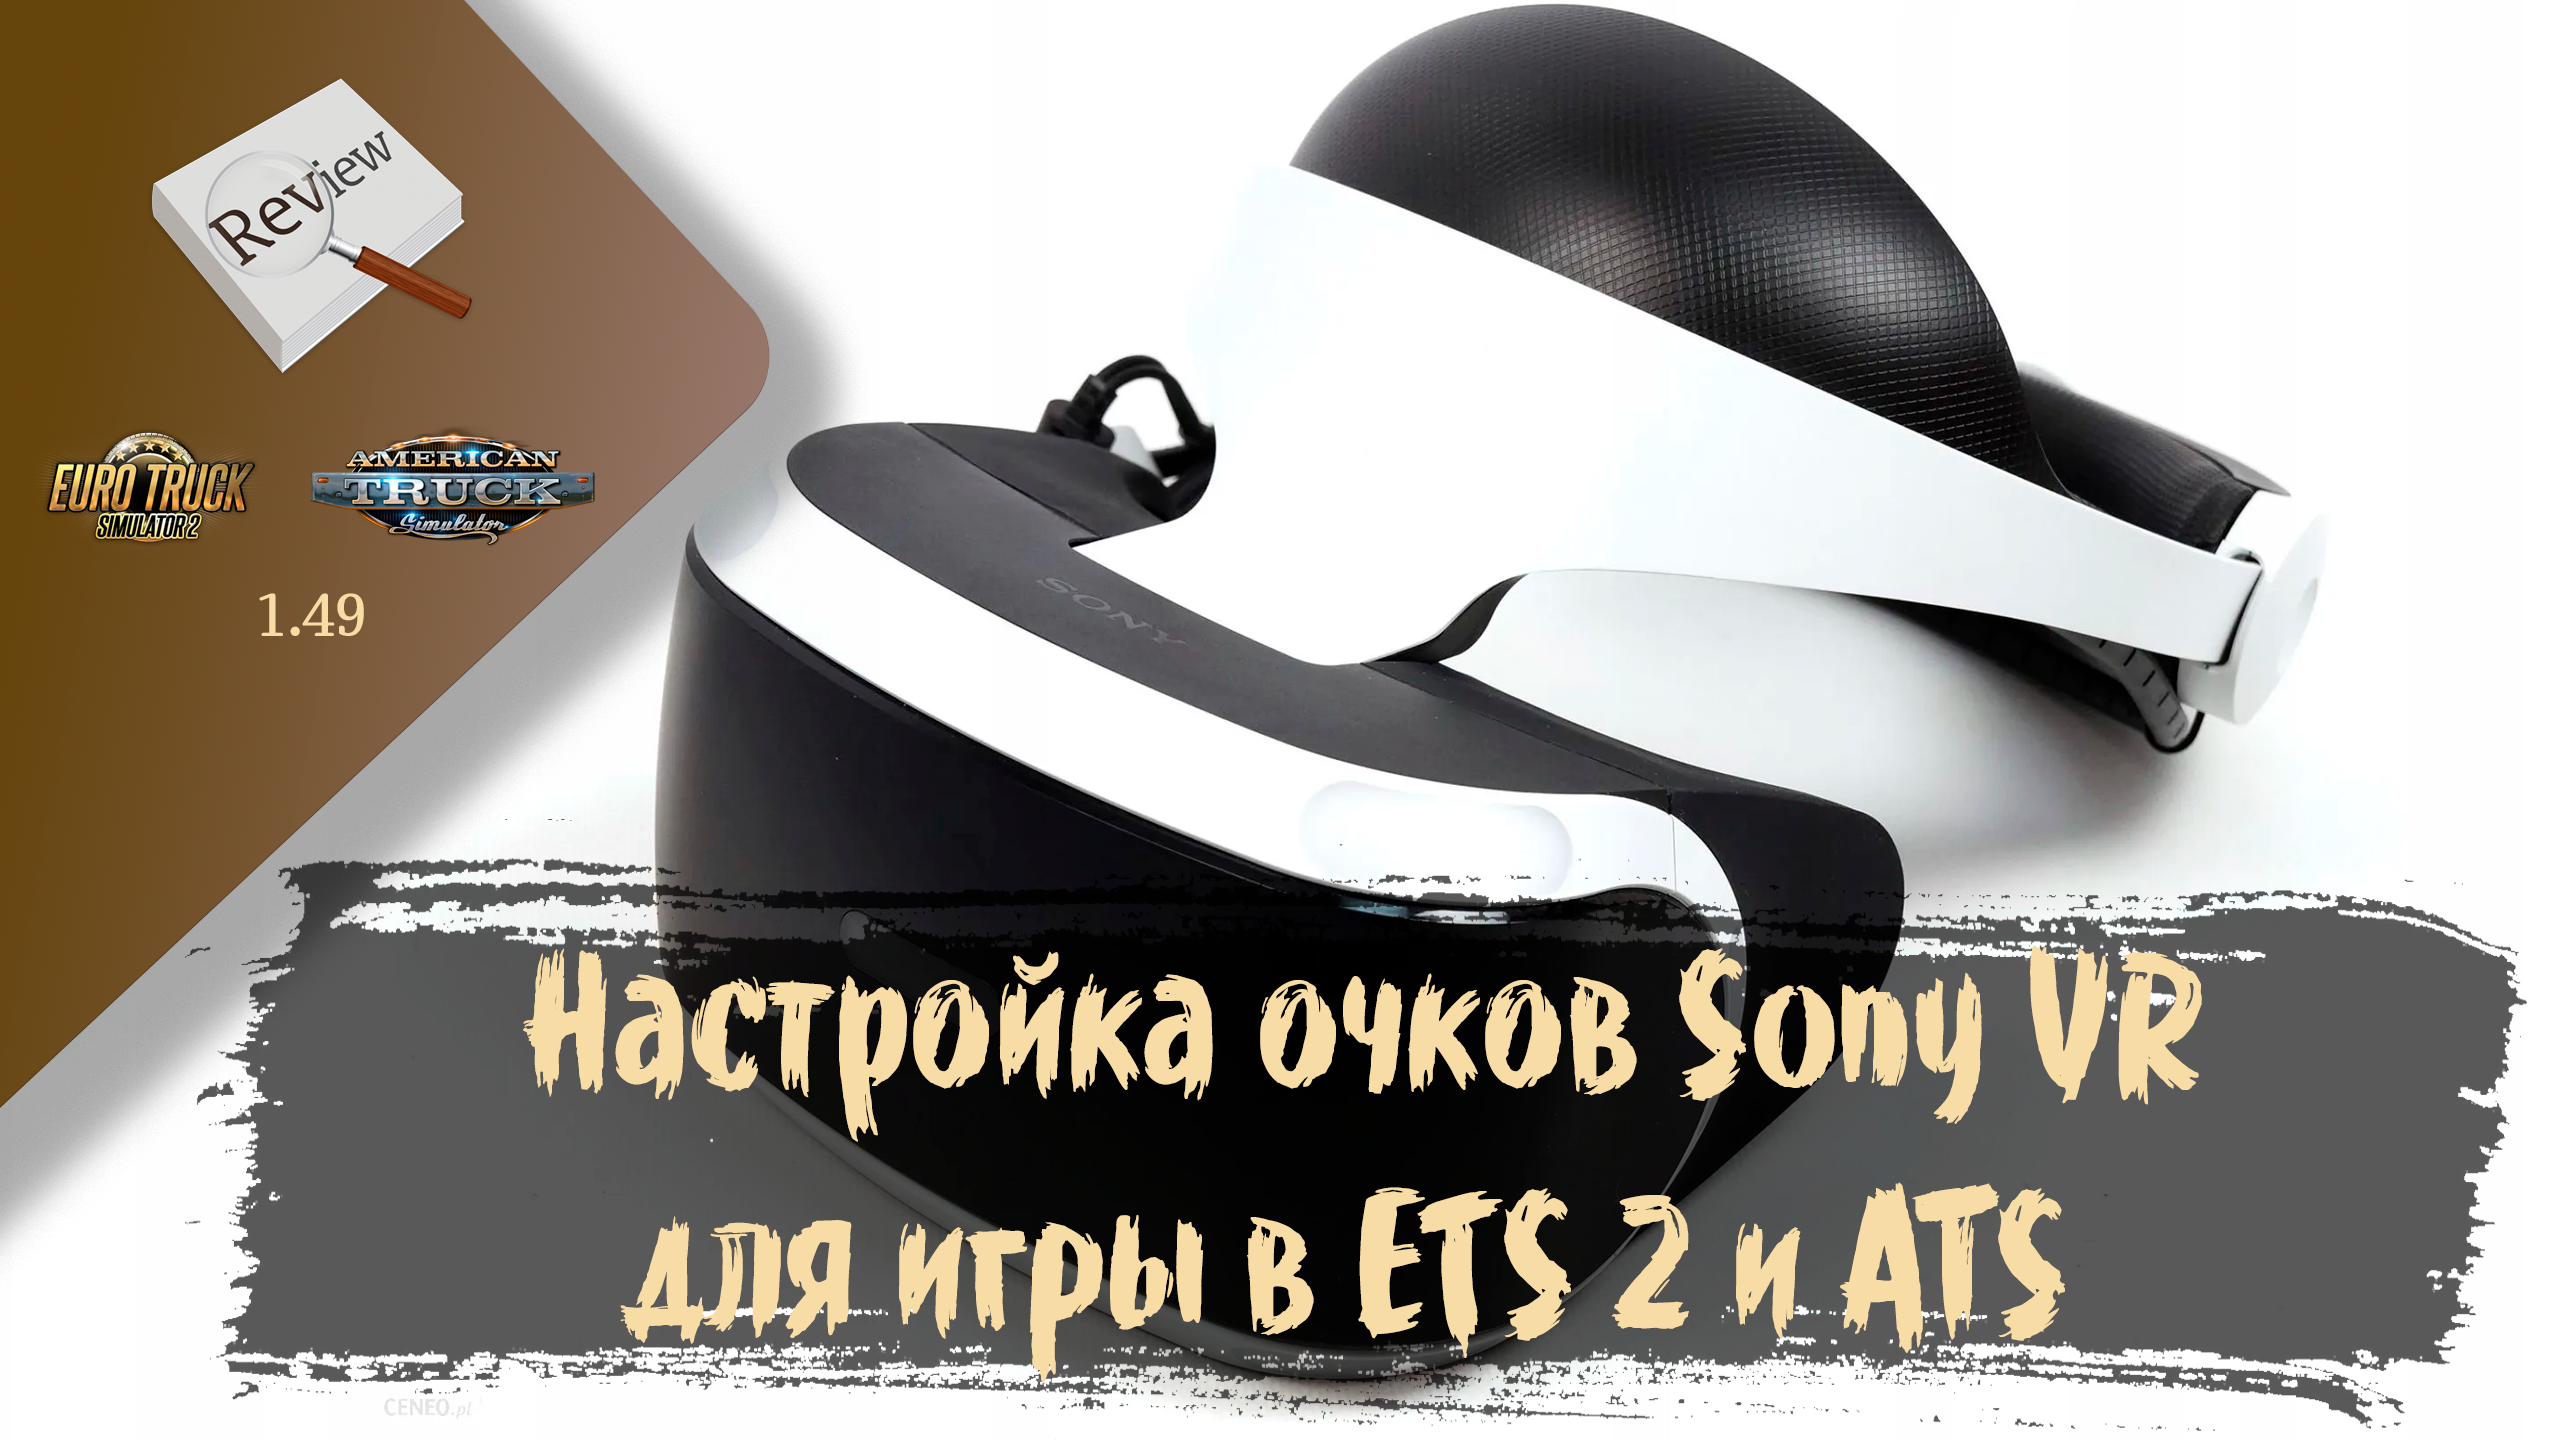 ОБЗОР. Подключение и настройка очков Sony VR для ETS 2 и ATS | ETS 2 1.49.2.23s | ATS 1.49.3.14s